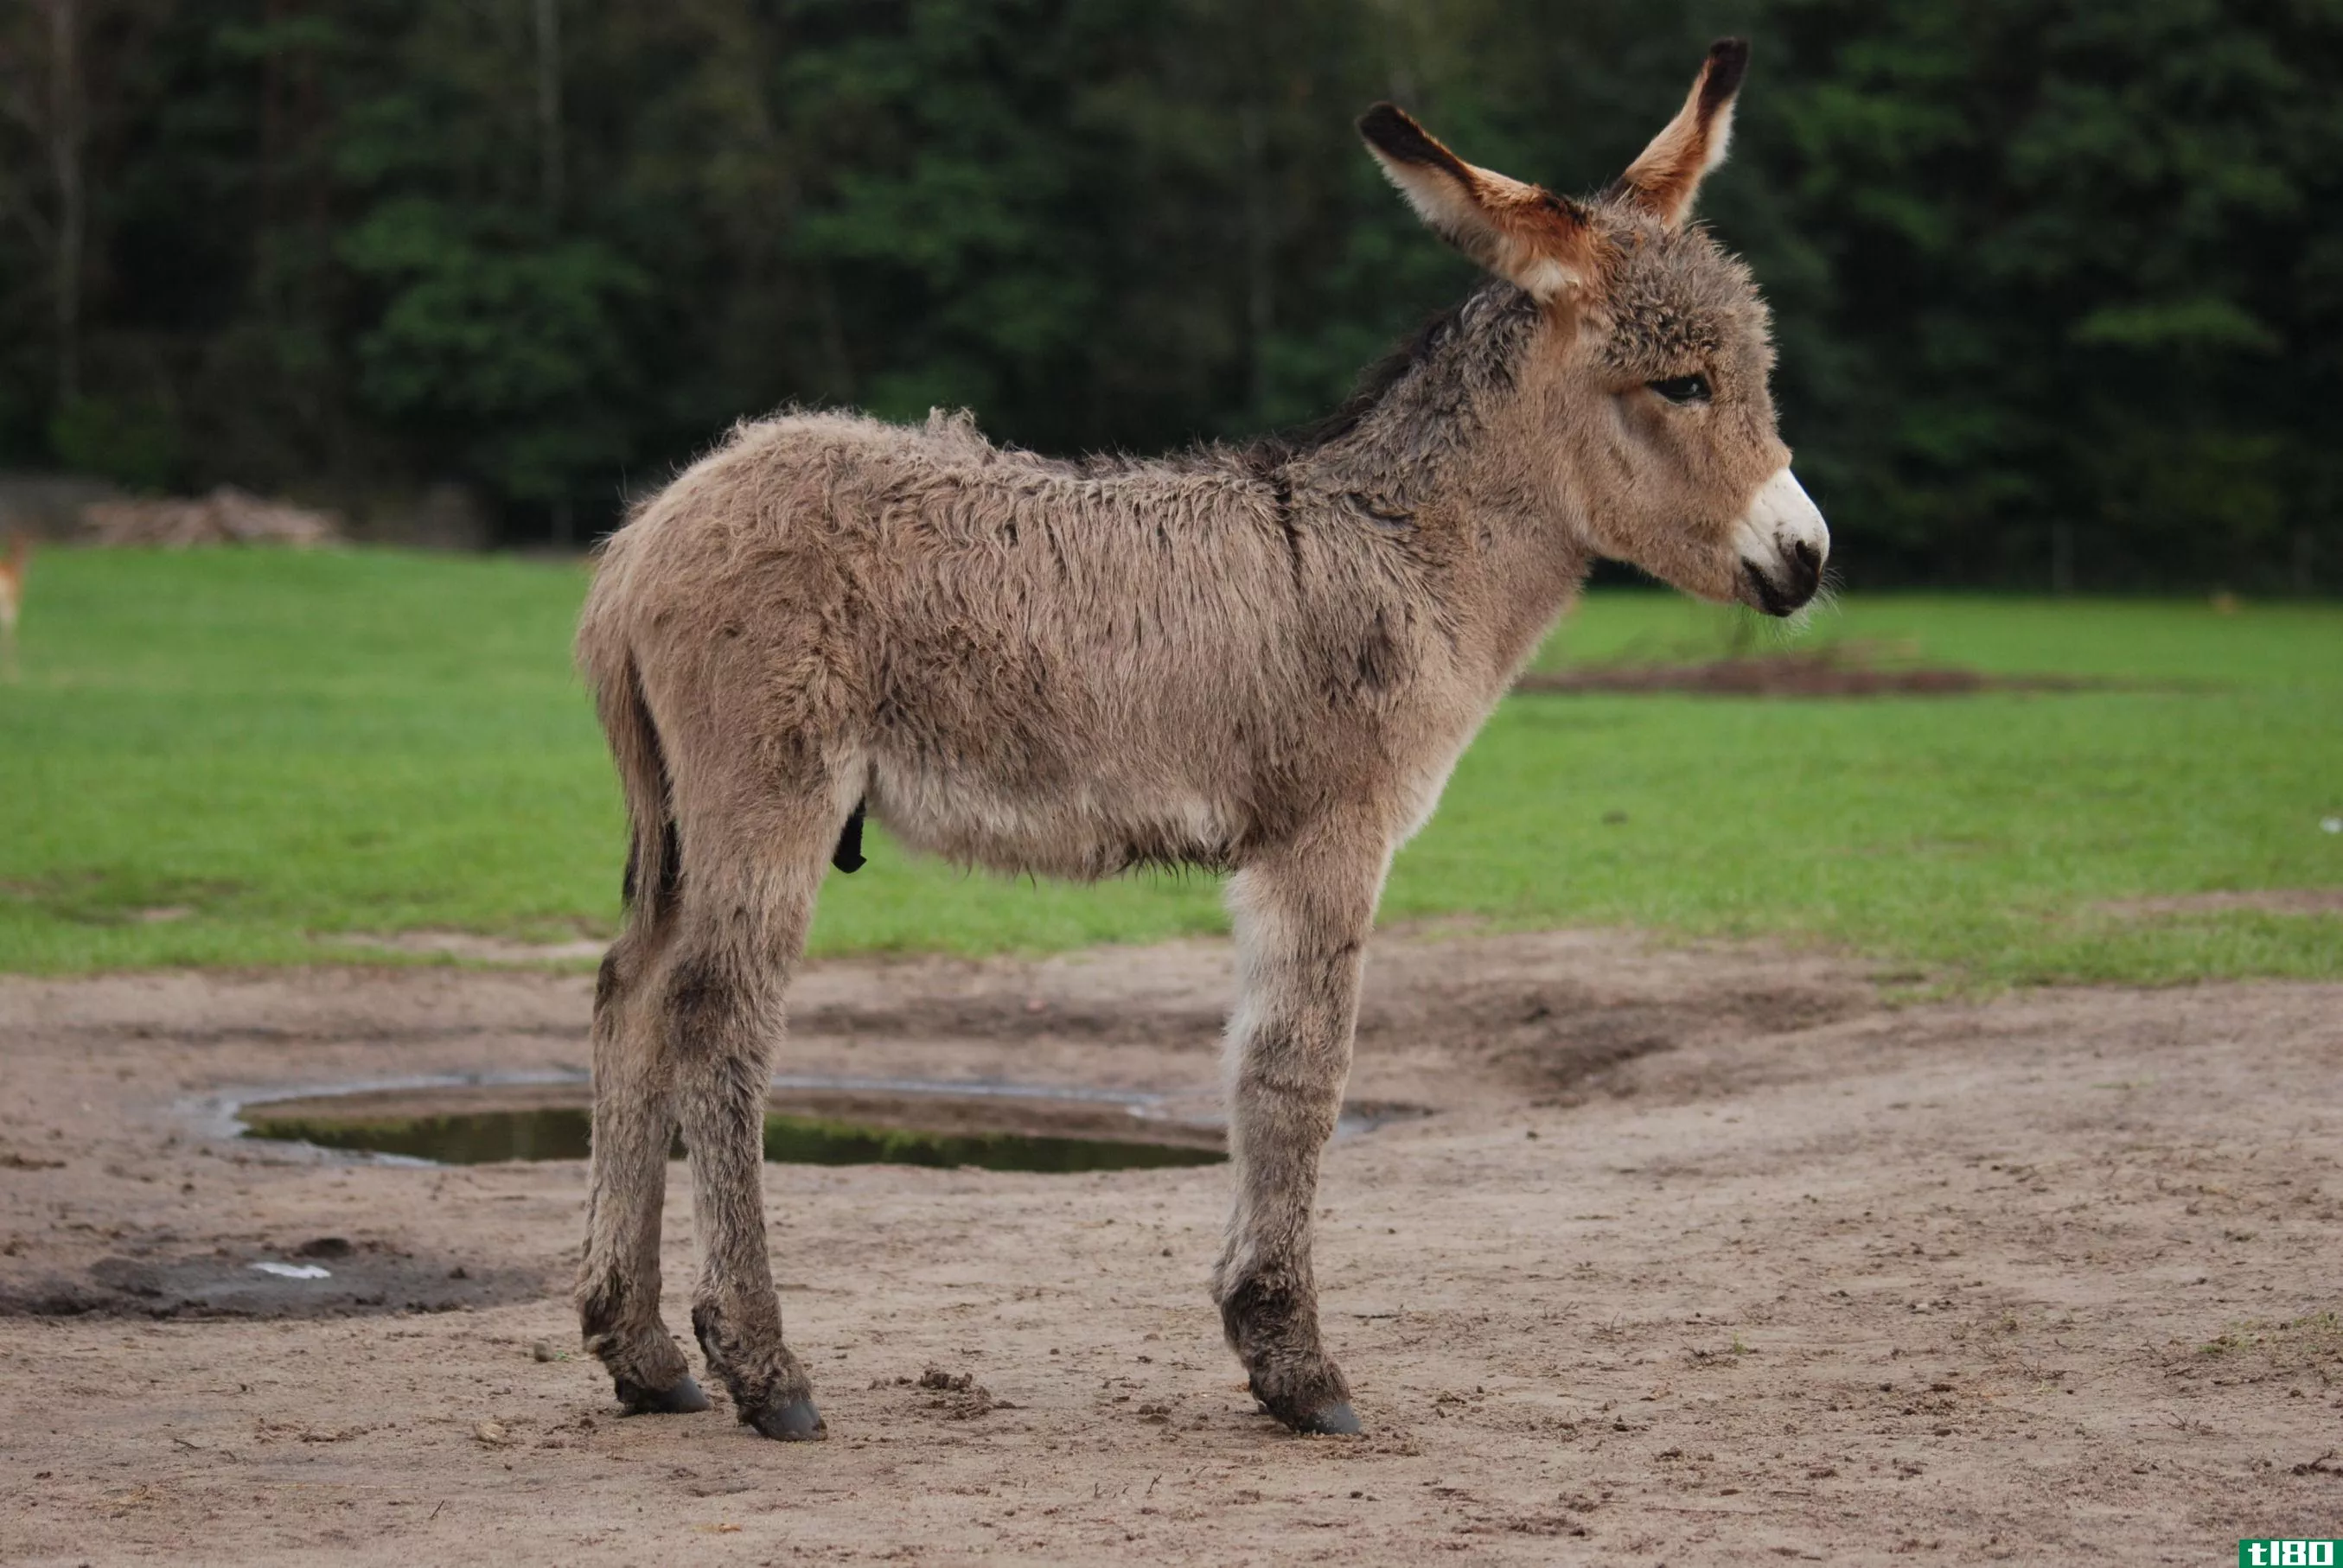 驴子(a donkey)和驴子(a burro)的区别